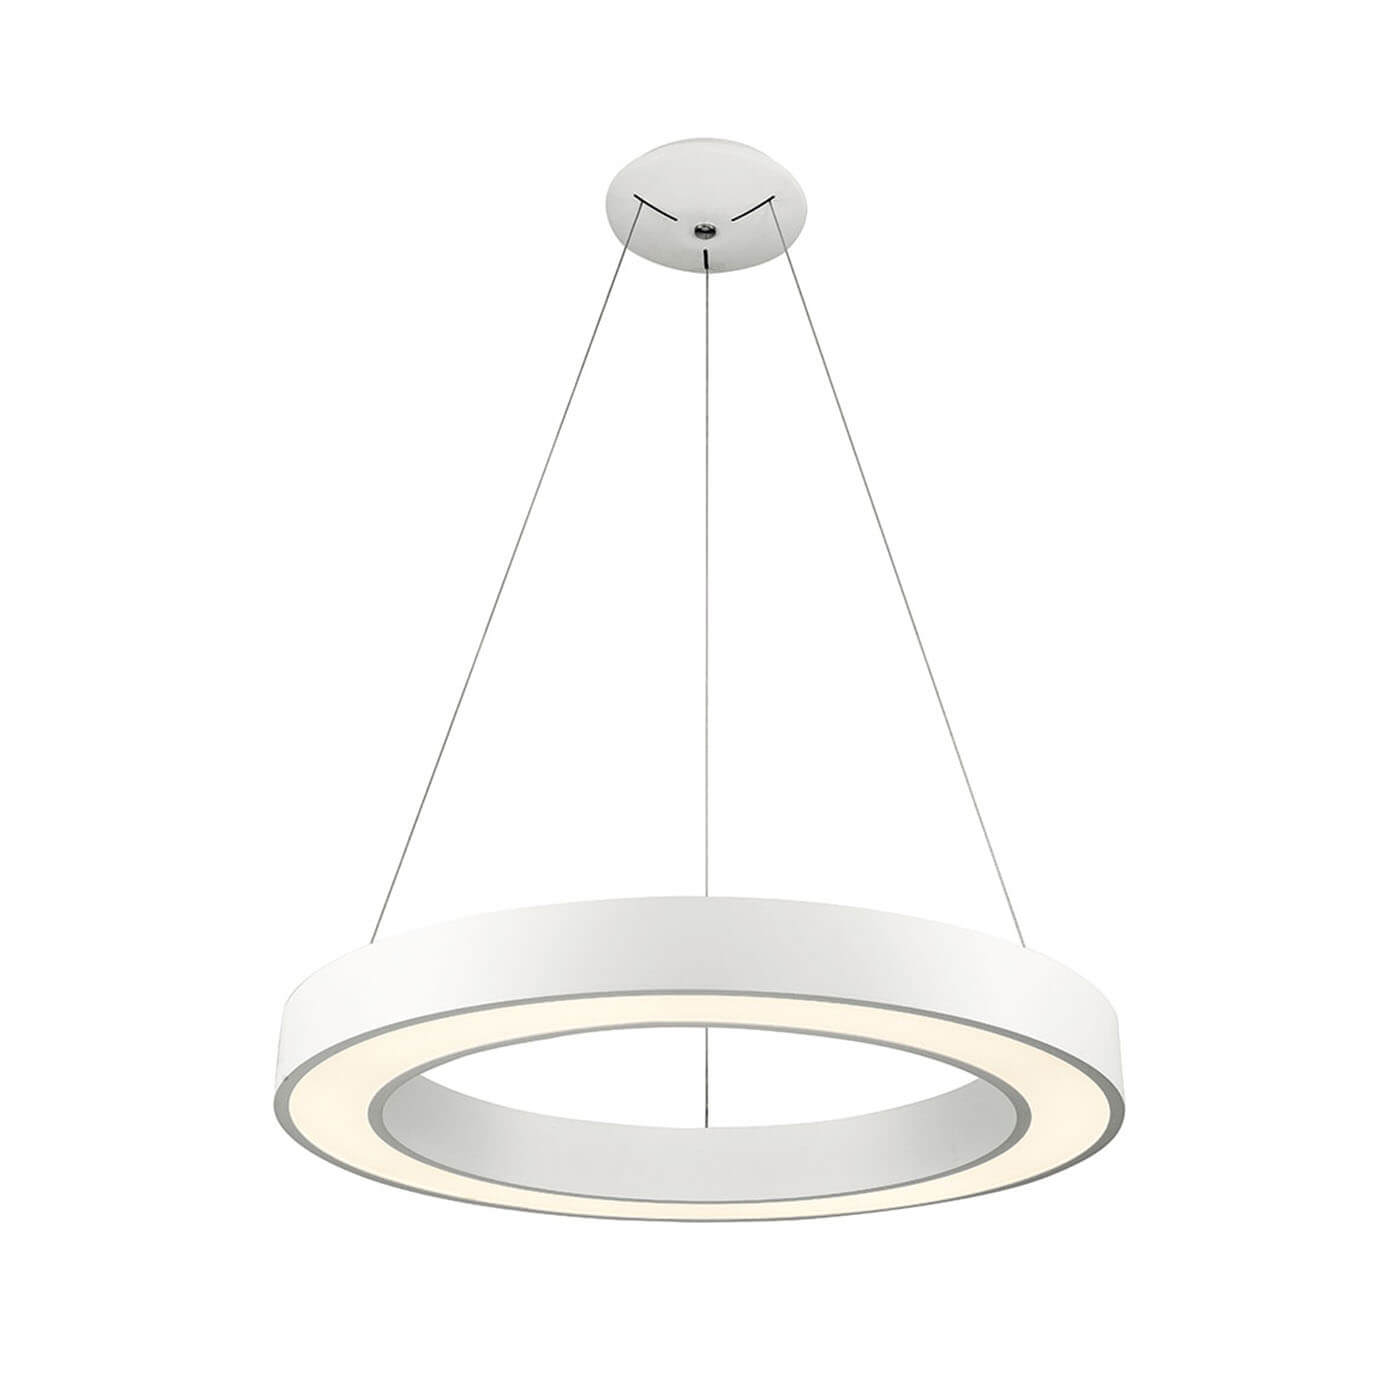 Cauti o lampa suspendata alba APOLLO cu LED 38W, design modern, minimalist, pentru living, dining sau dormitor din colectia de lustre si candelabre Domicilio?